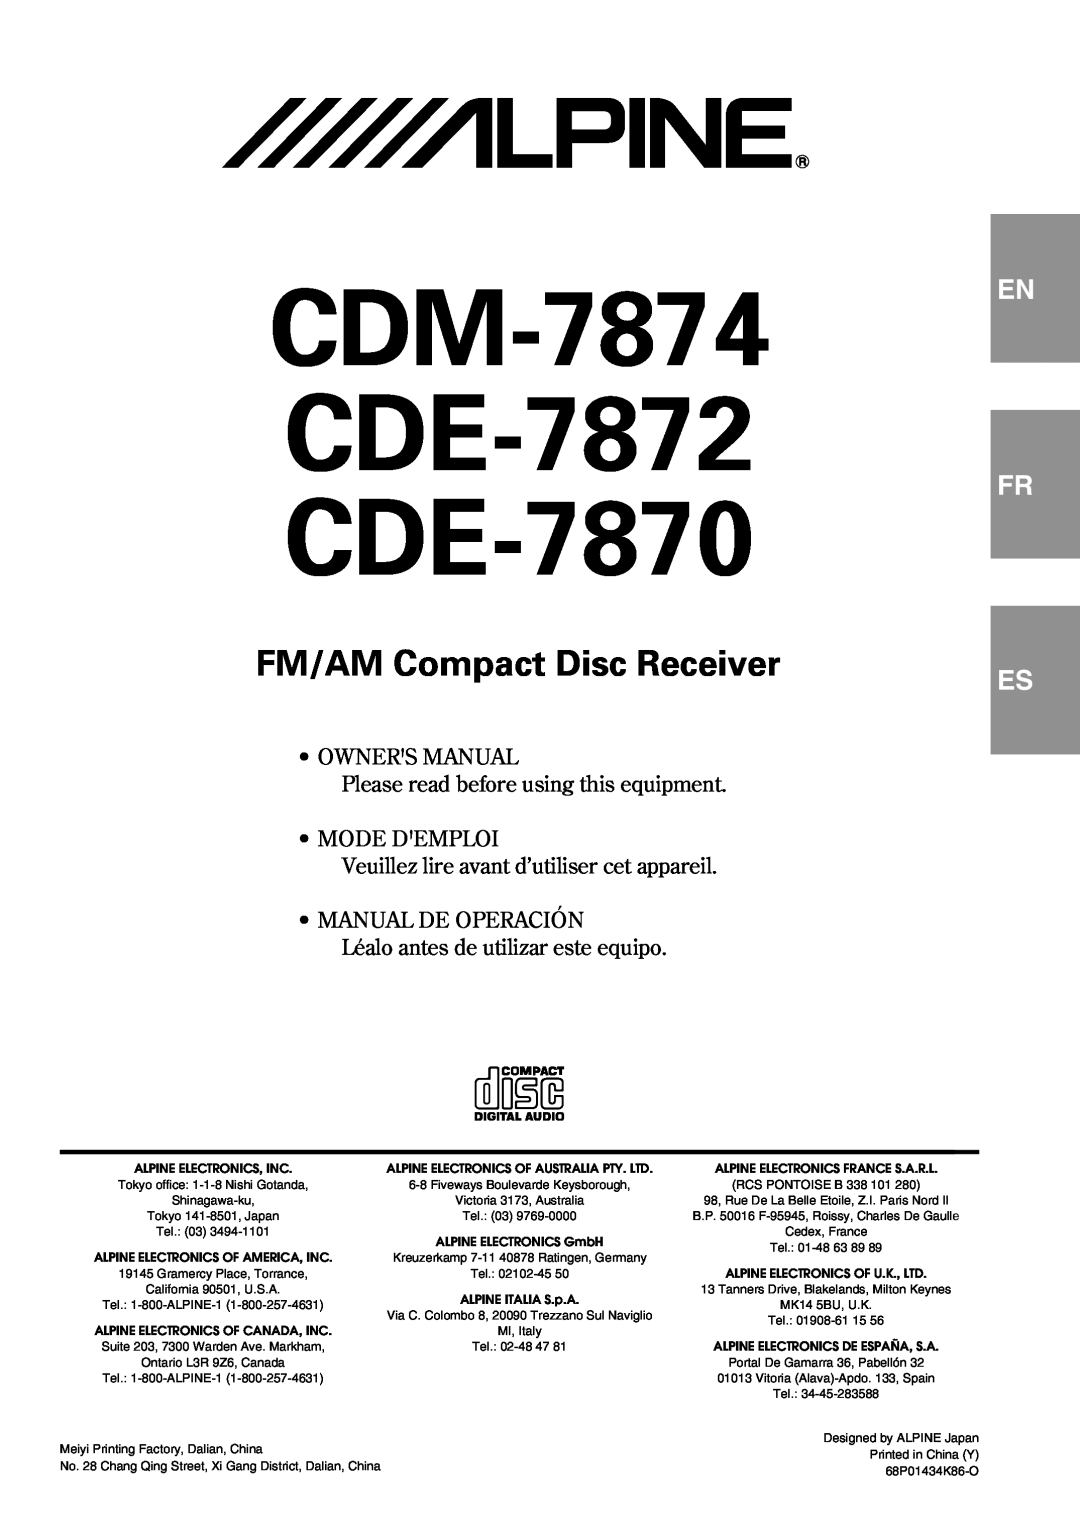 Alpine owner manual CDM-7874 CDE-7872 CDE-7870, FM/AM Compact Disc Receiver, En Fr, Mode Demploi, Manual De Operación 